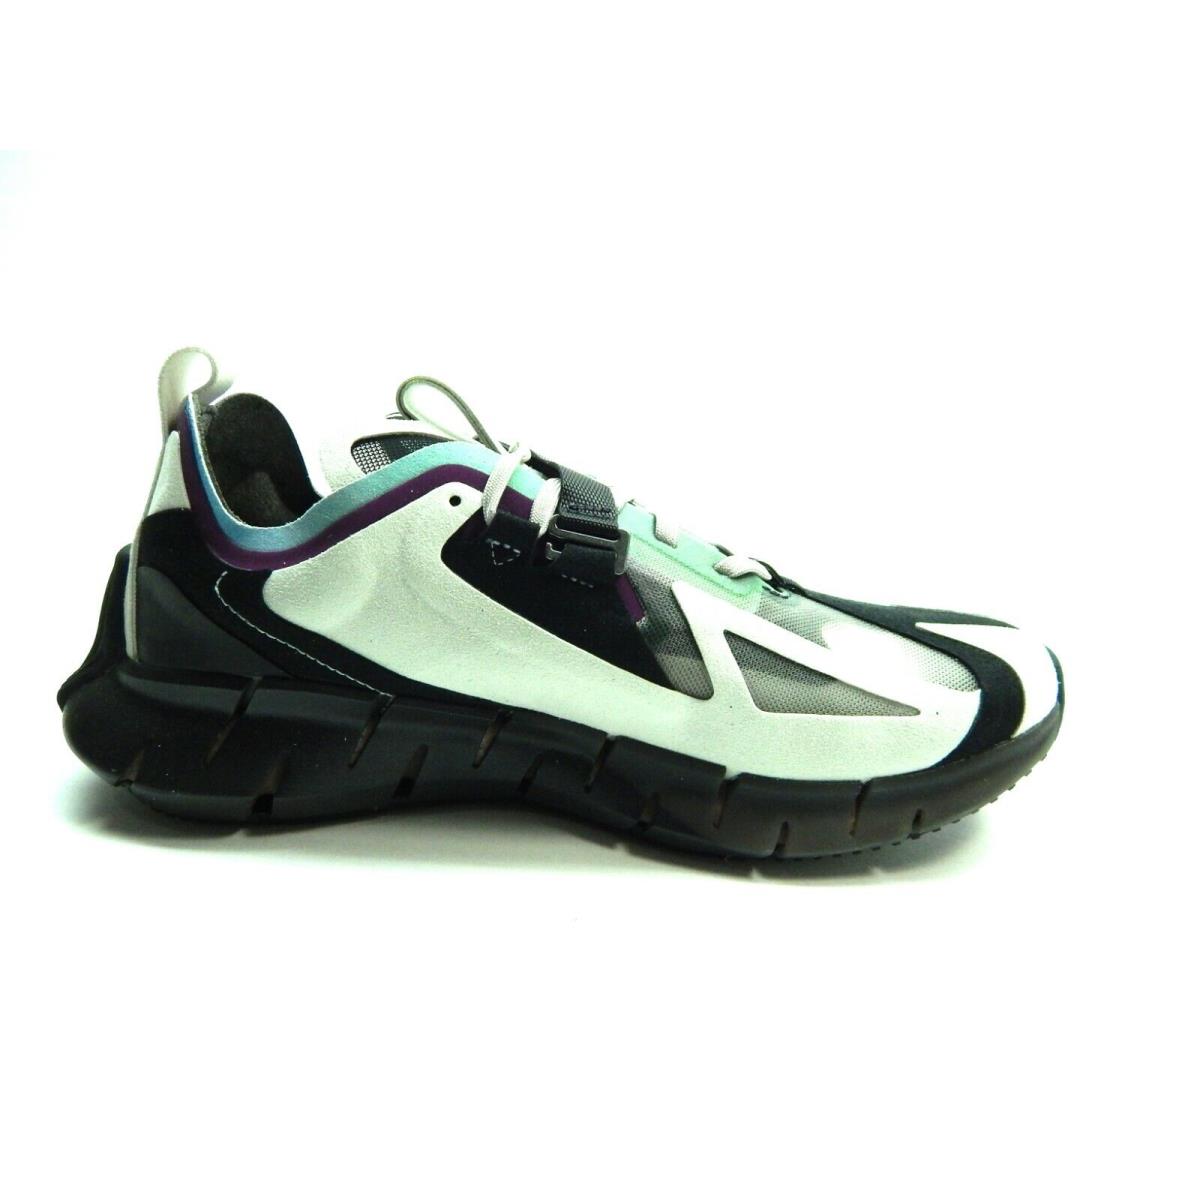 Reebok shoes ZIG KINETICA CONCEPT - Multicolor 2